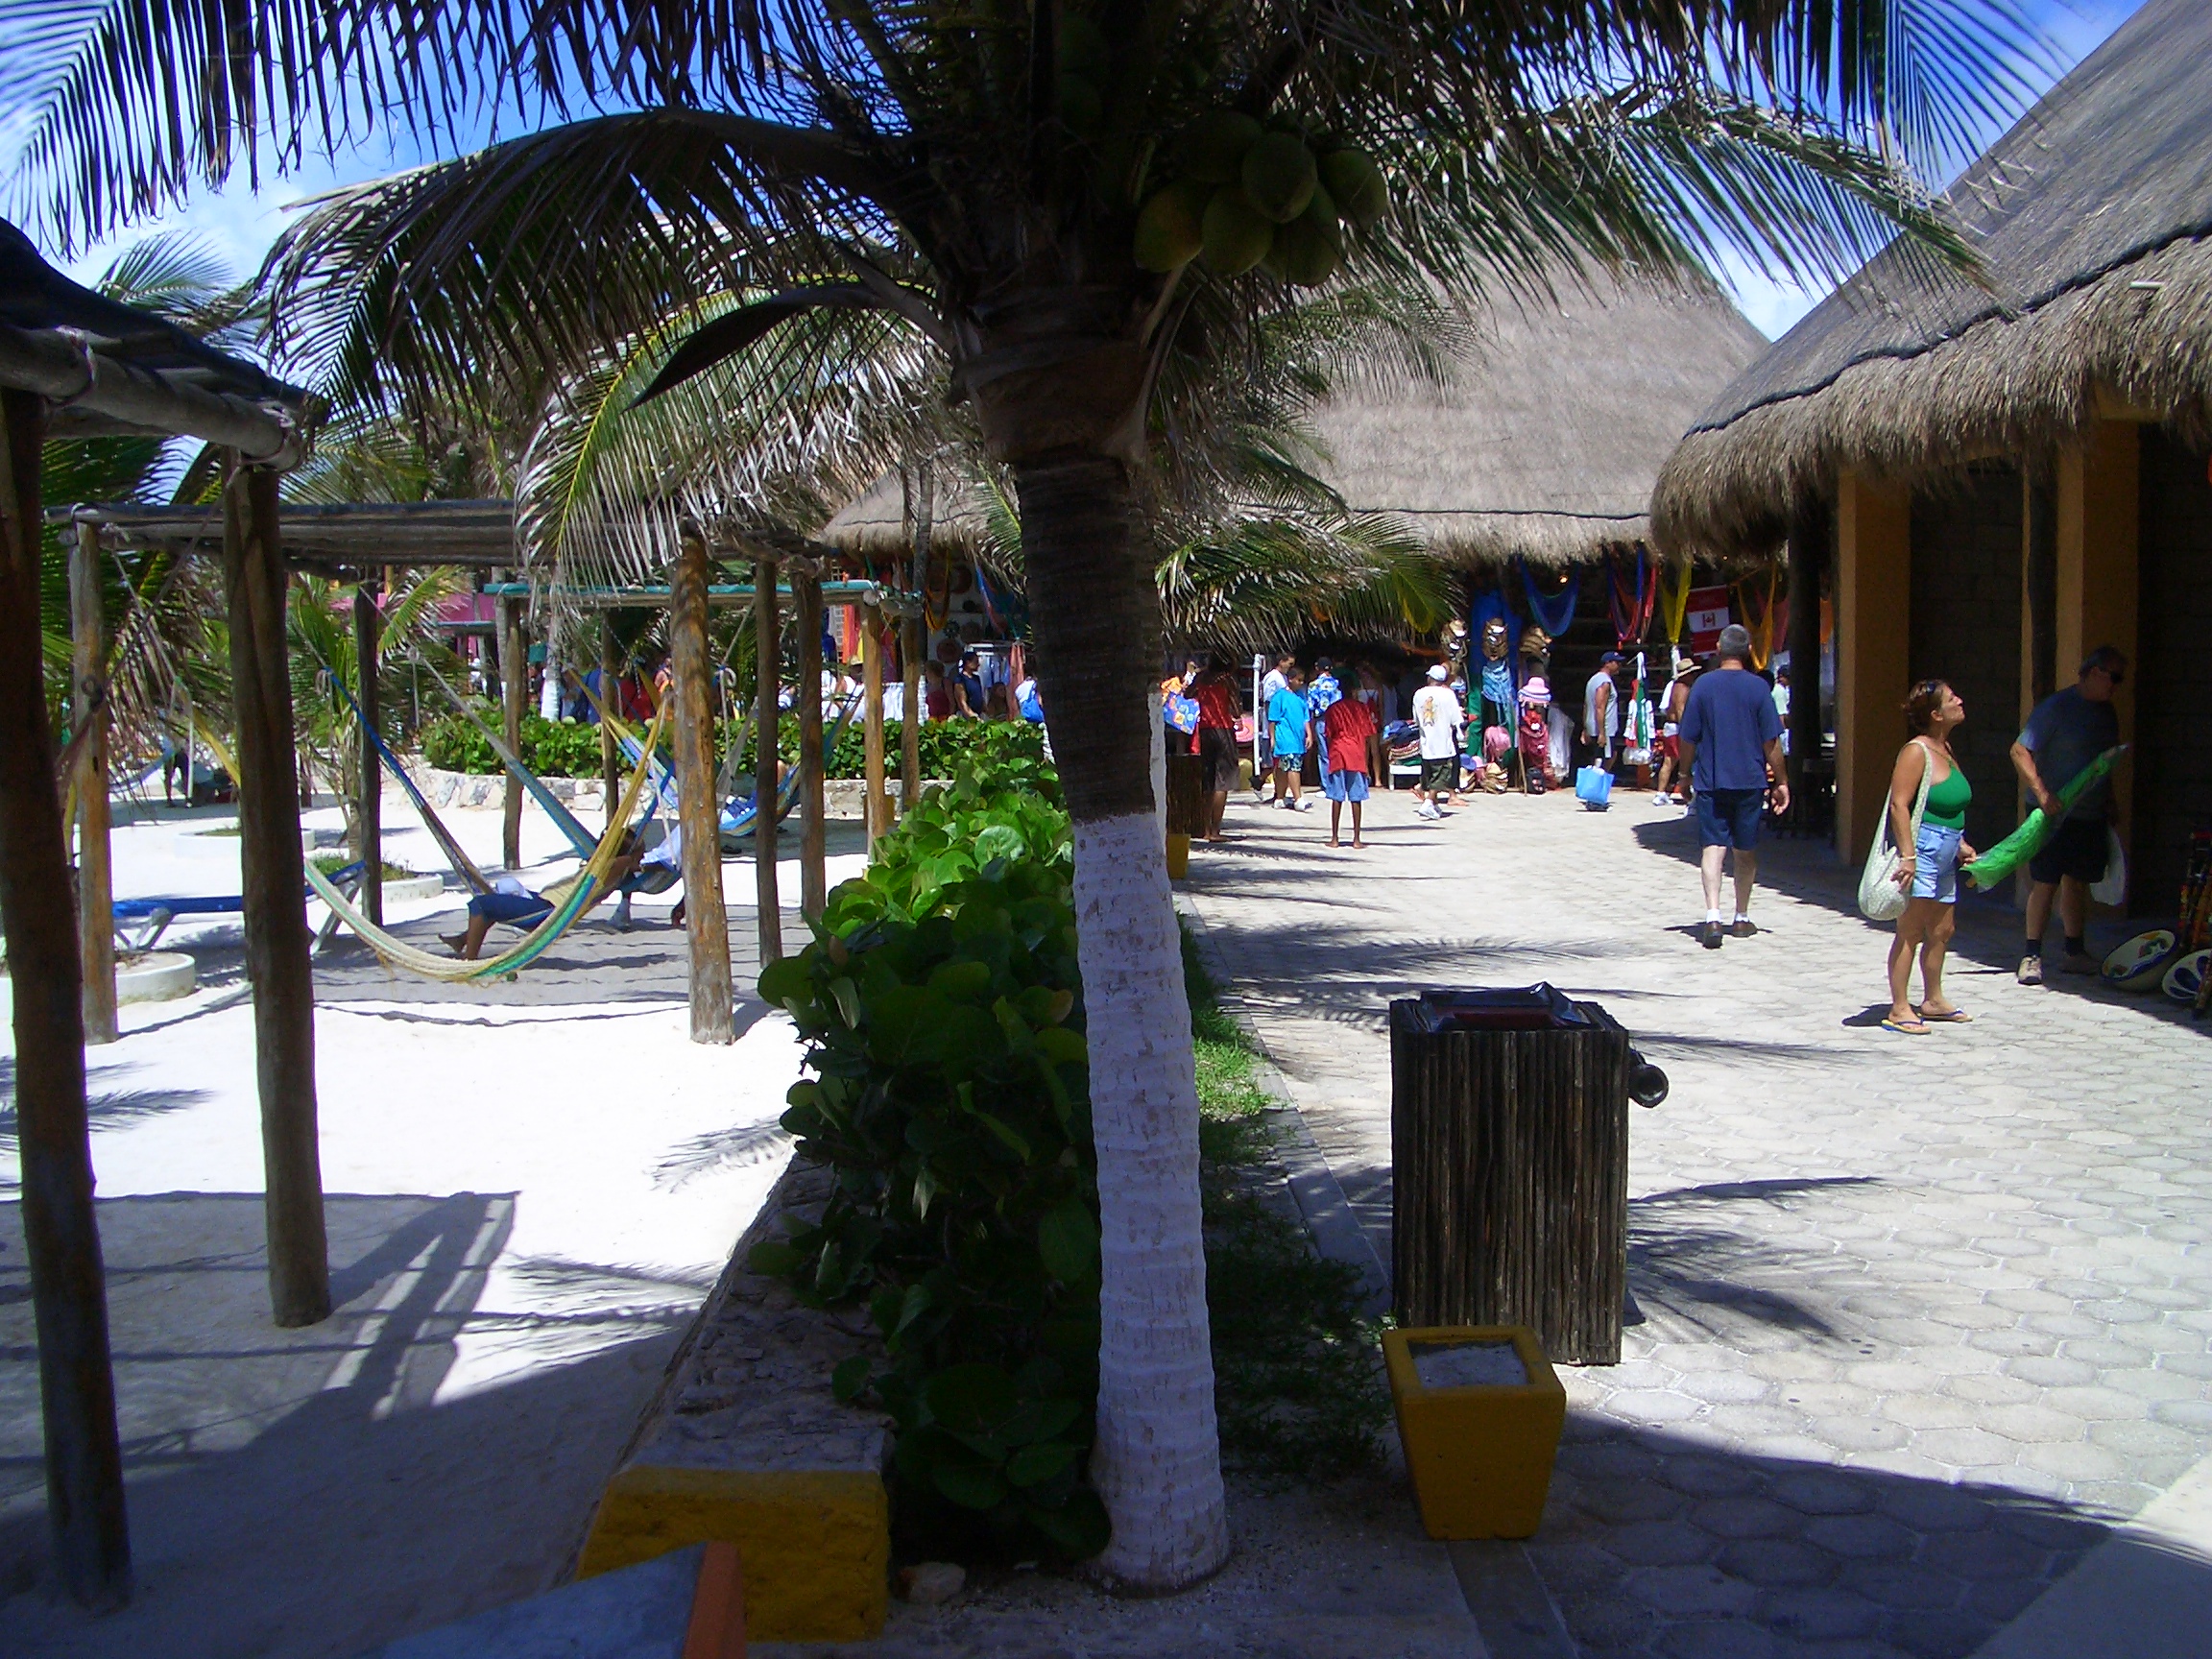 Shopping Port at Costa Maya